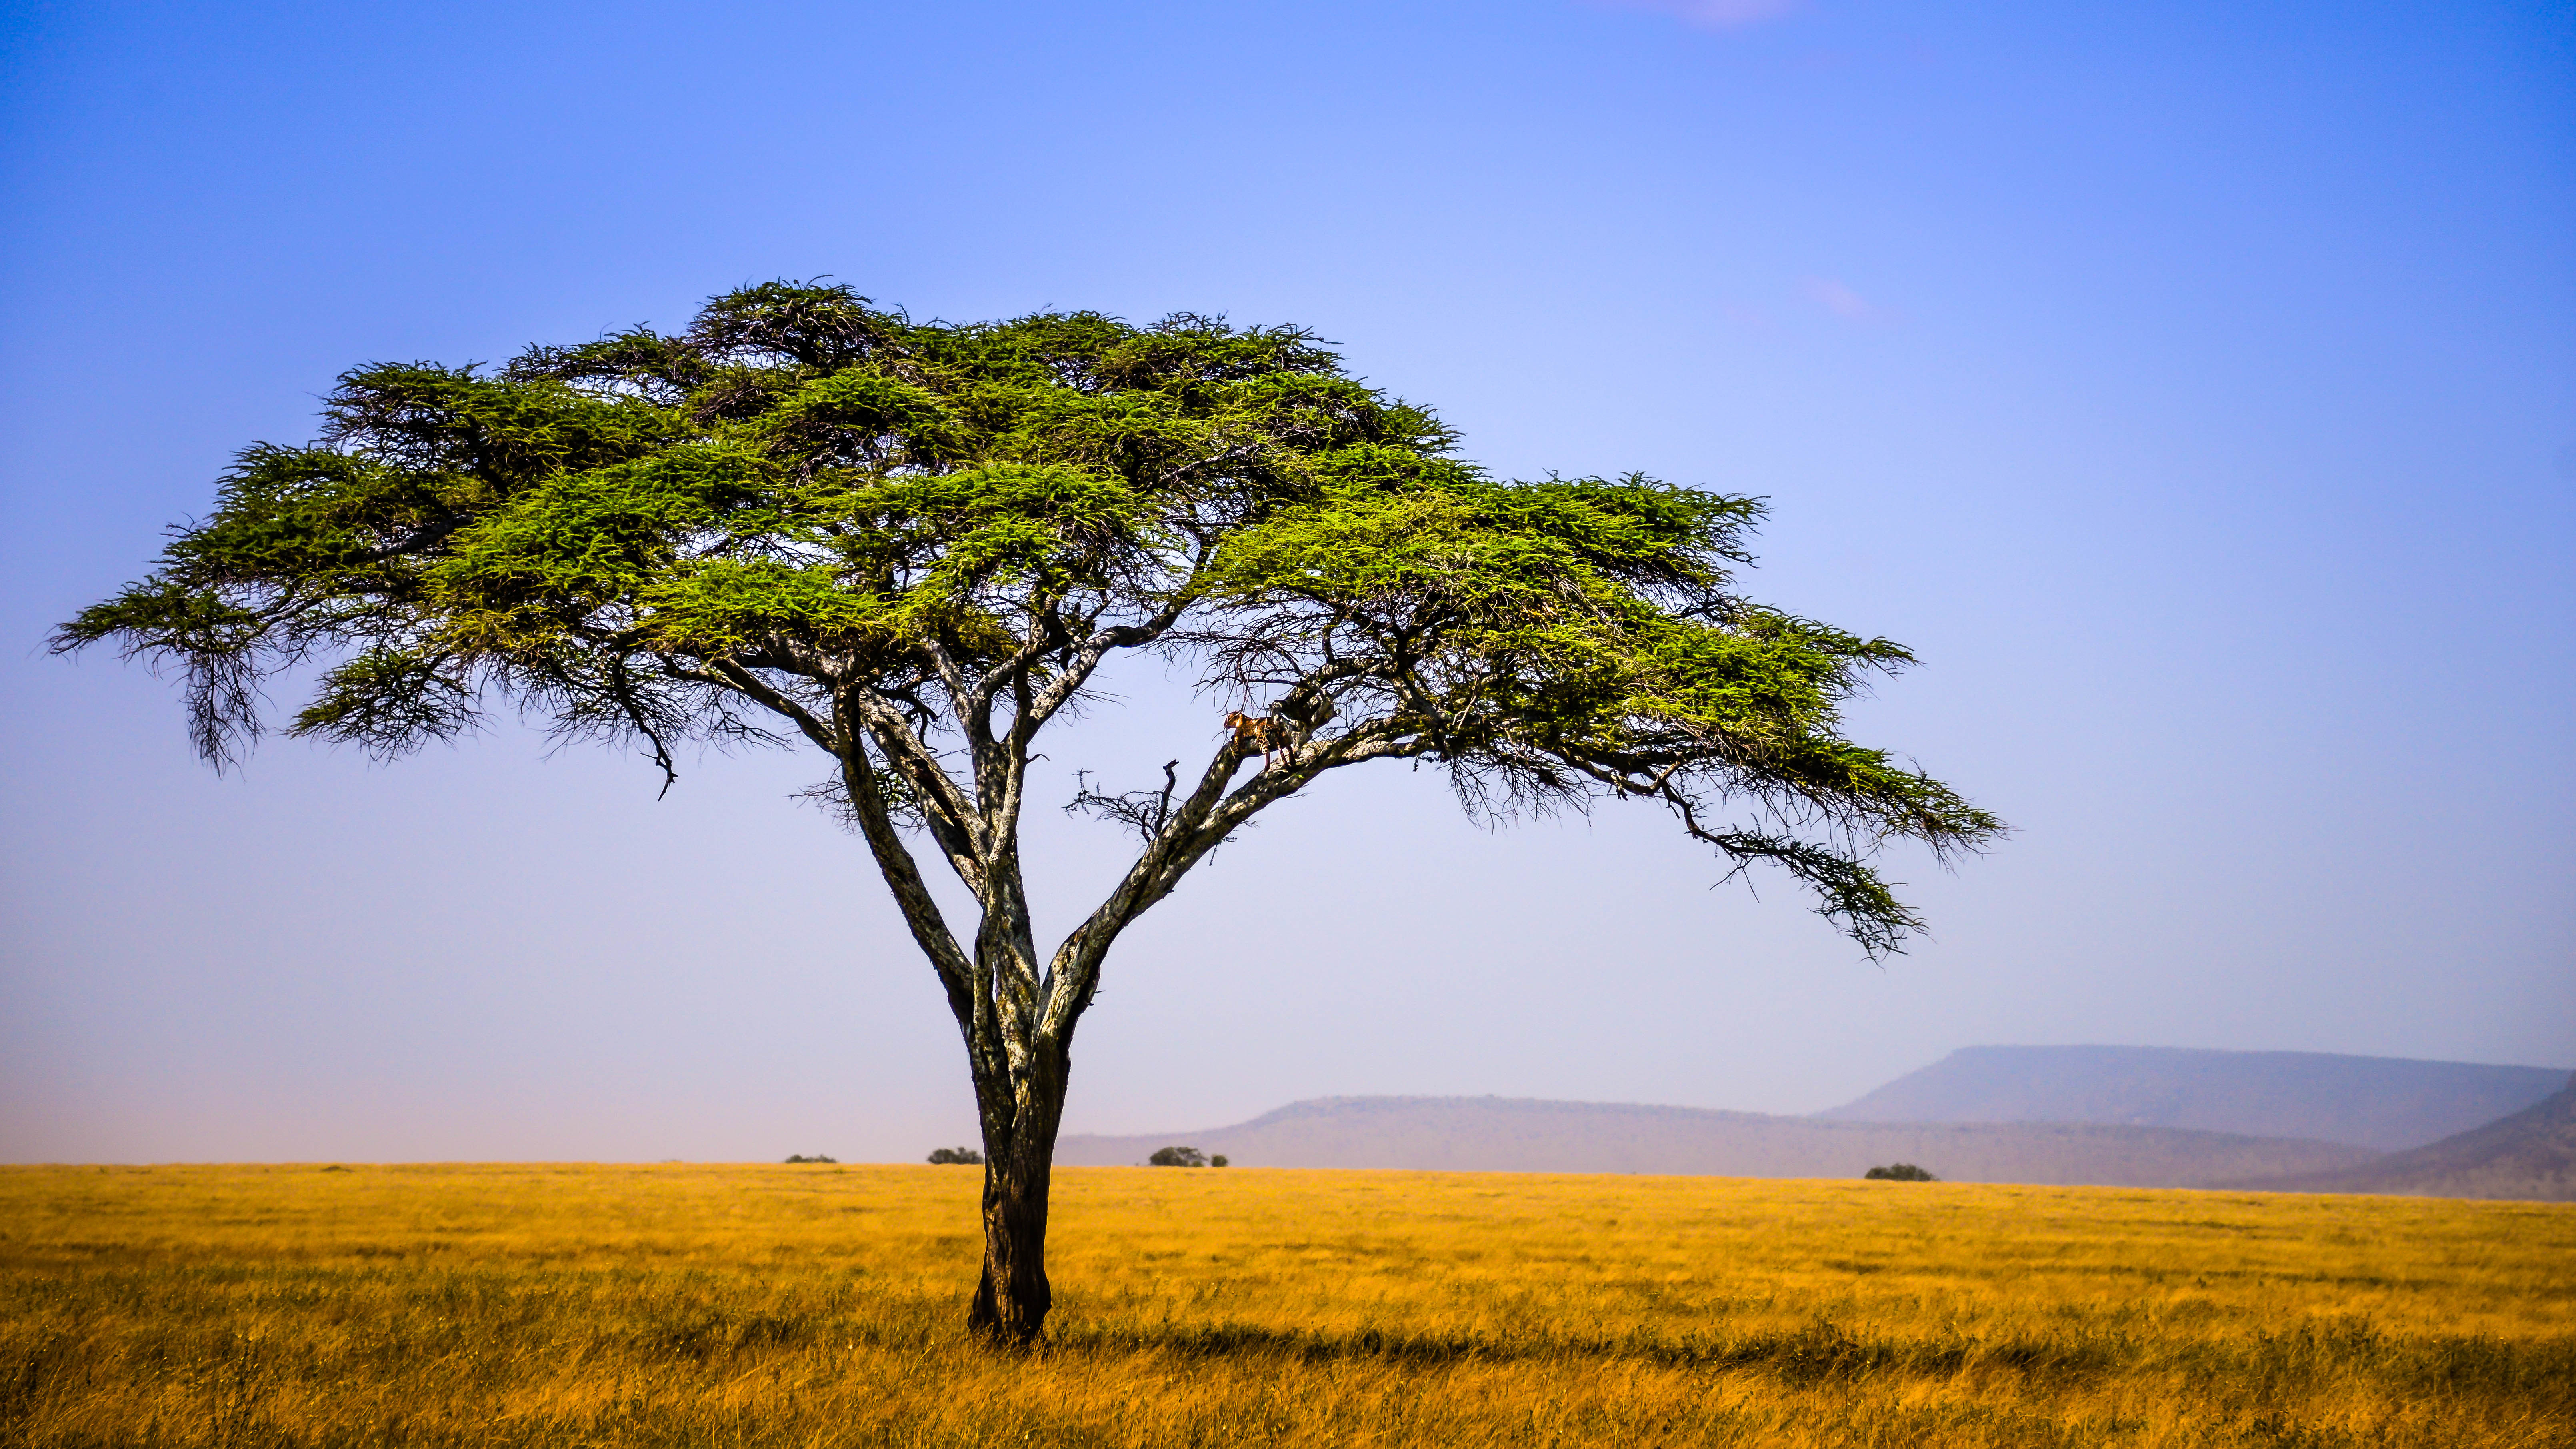 Обои для рабочего стола Африка Tanzania East Africa Природа Поля Небо Луга дерево дерева Деревья деревьев